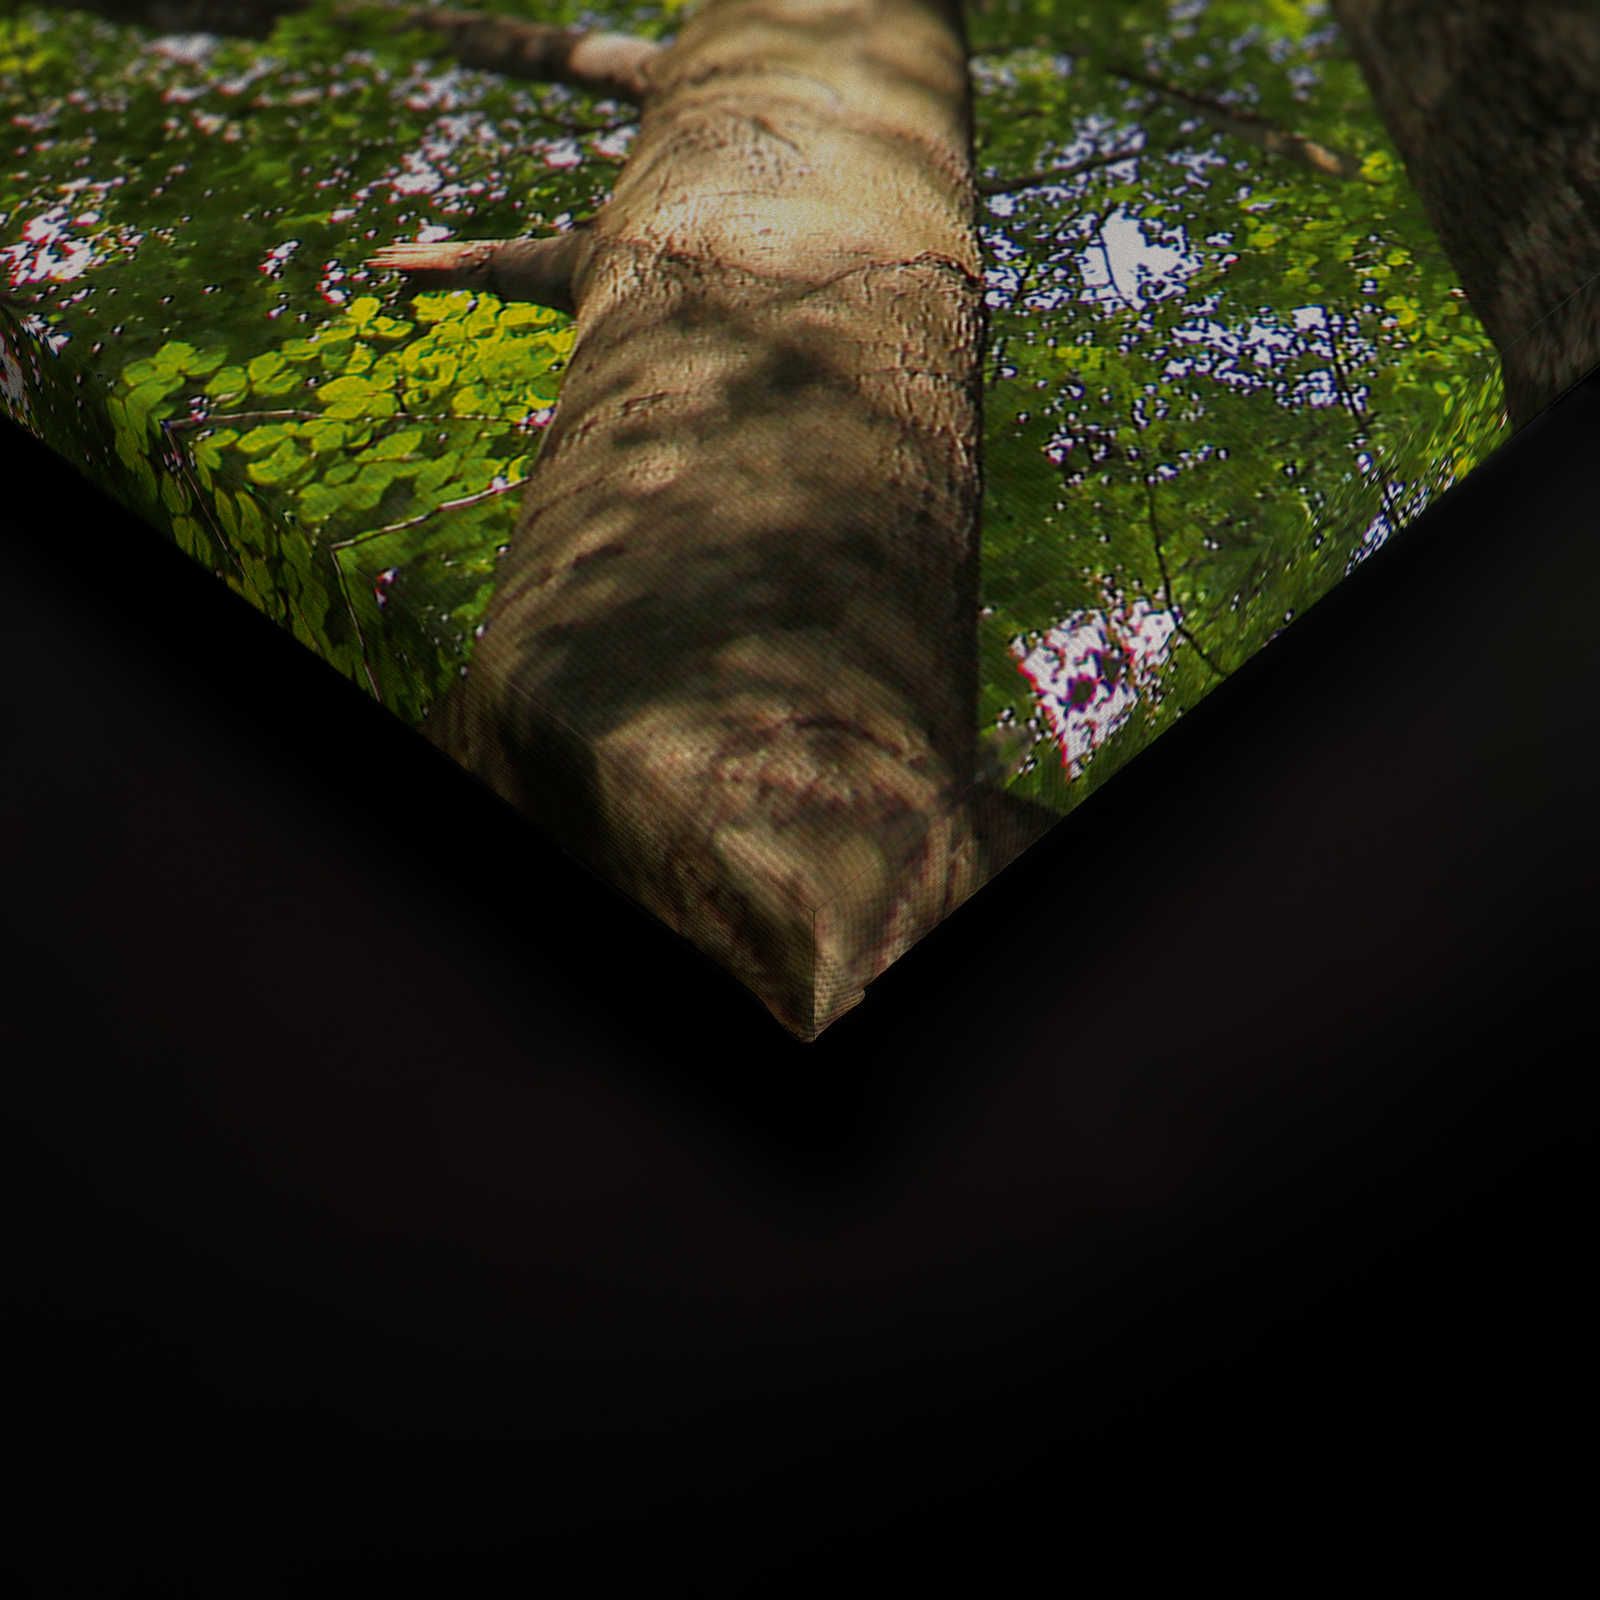             Cuadro lienzo follaje con copas de árboles de bosque caducifolio - 0,90 m x 0,60 m
        